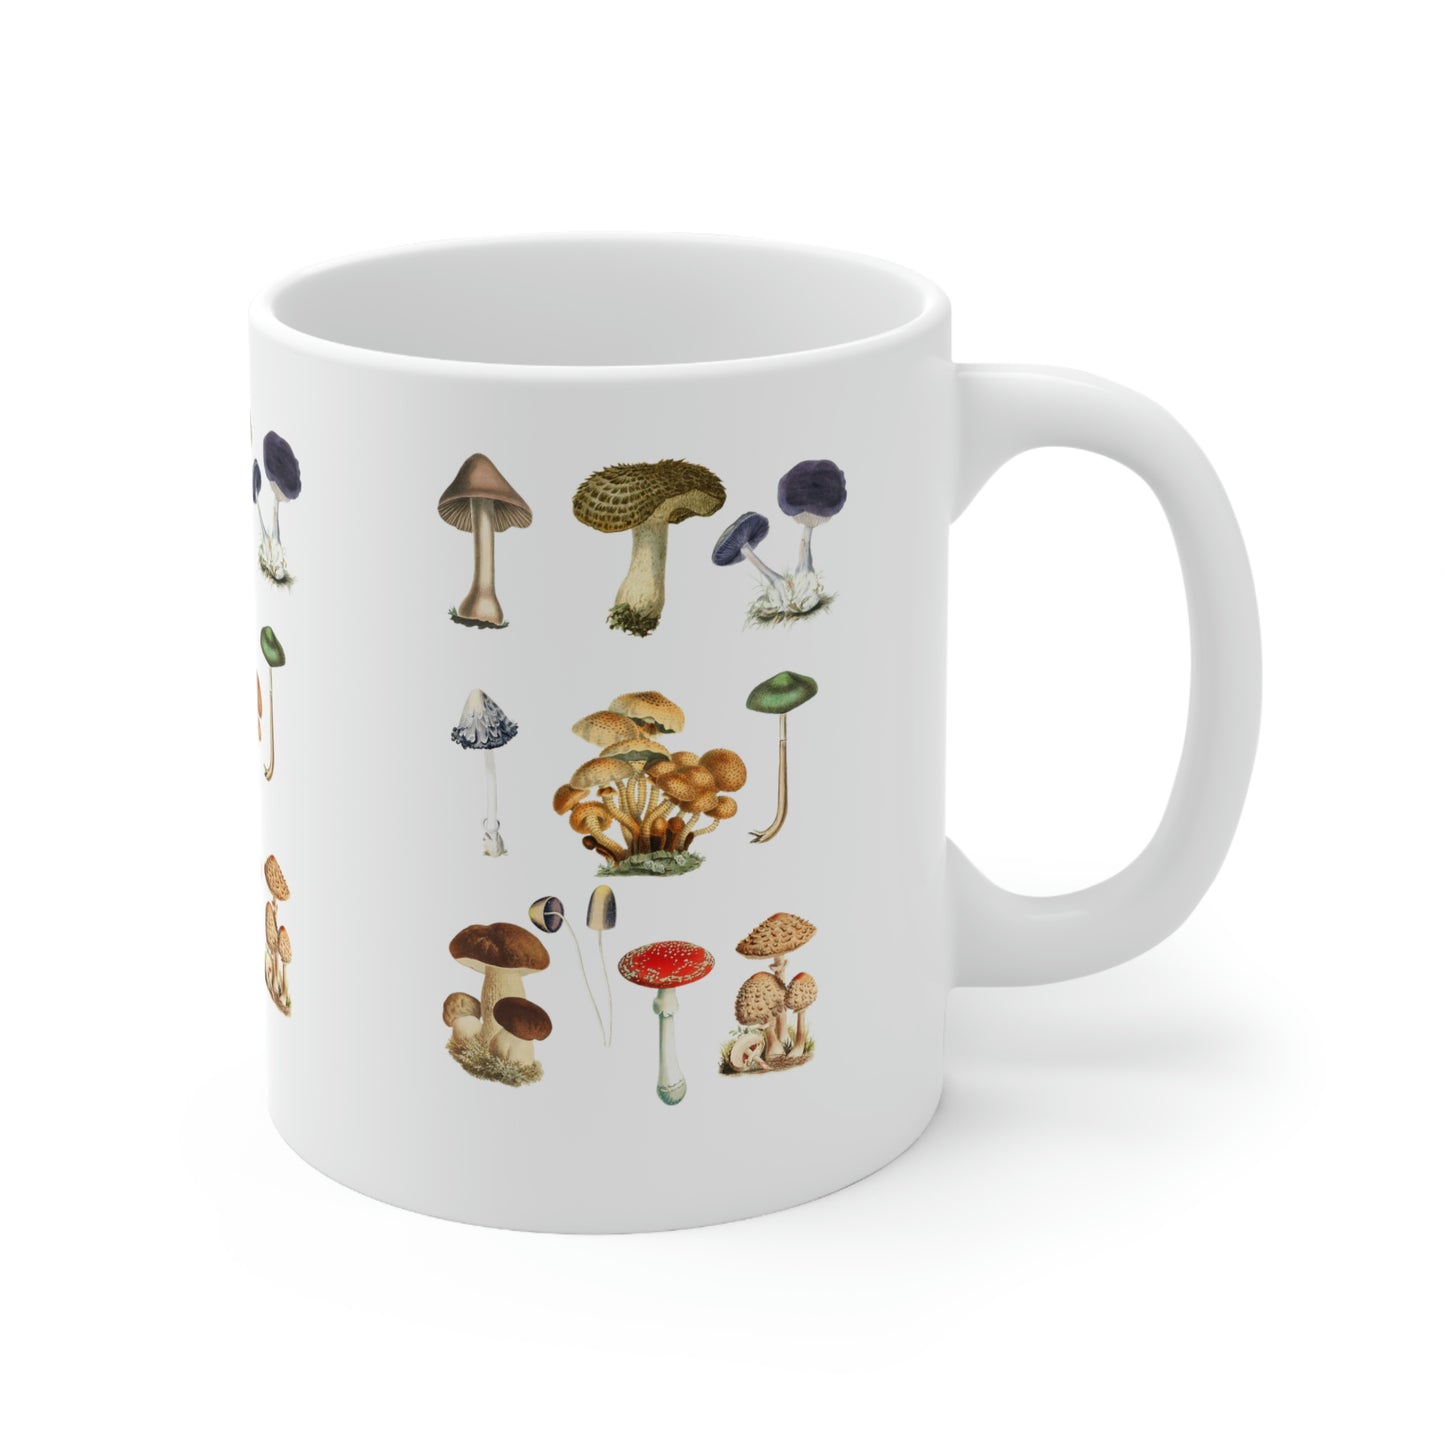 Ceramic Mug 11oz, Botanical Magic Mushroom Coffee Mug